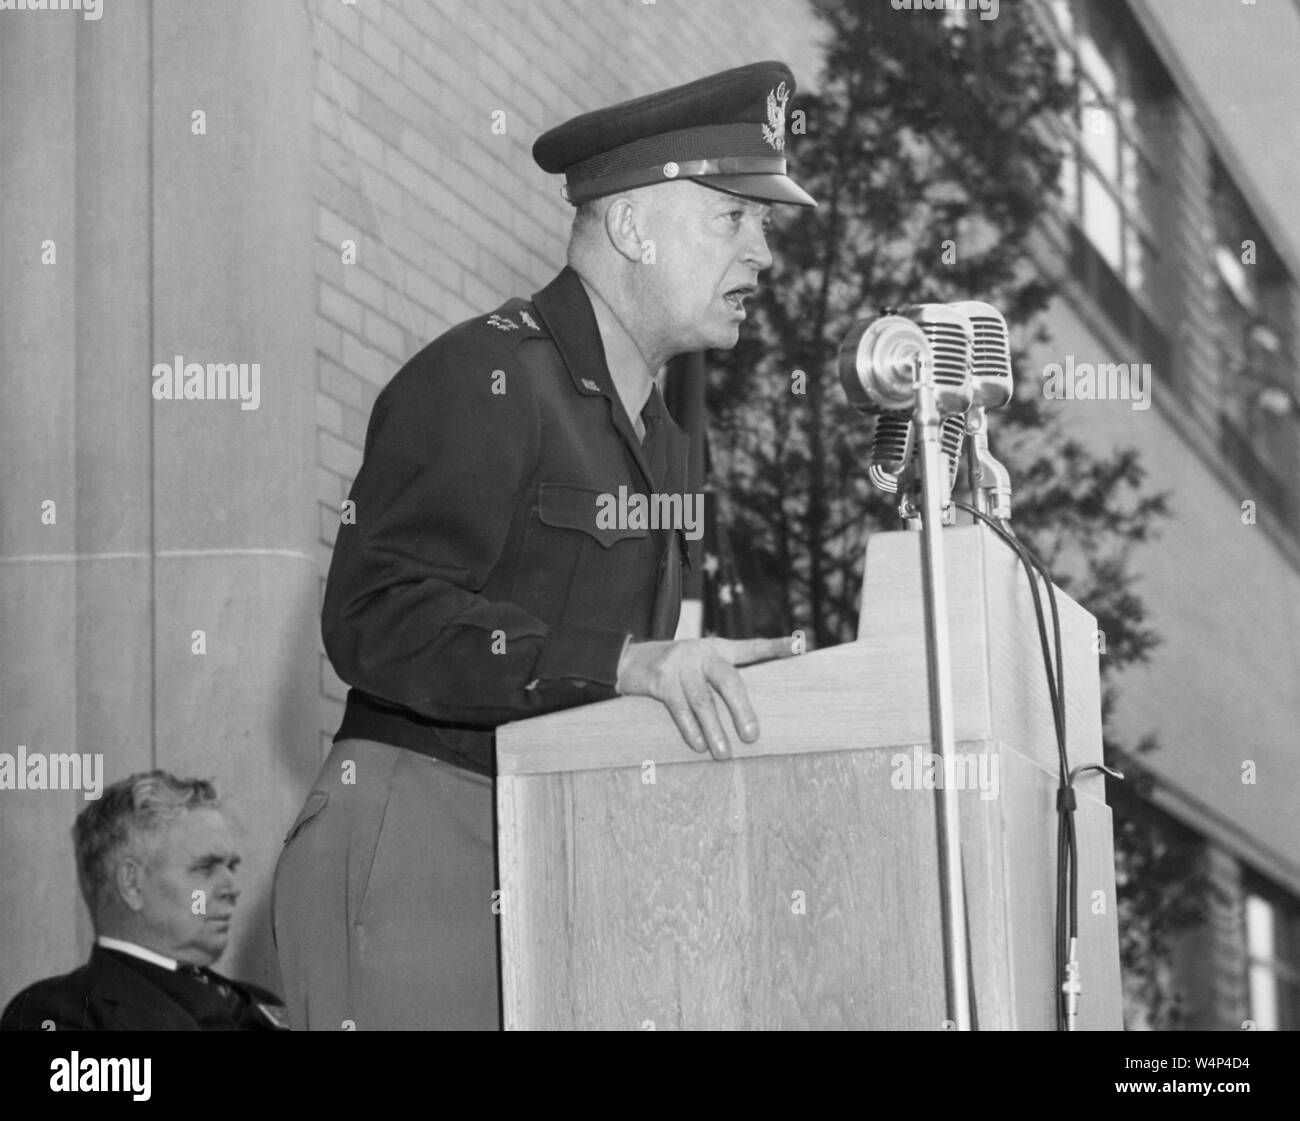 El general Dwight D. Eisenhower pronuncia un discurso en el Laboratorio de Investigación de motores de aviones, Cleveland, Ohio, el Director del Centro, Edward Ray Sharp sentado en el fondo, 11 de abril de 1946. Imagen cortesía de la Administración Nacional de Aeronáutica y del Espacio (NASA). () Foto de stock